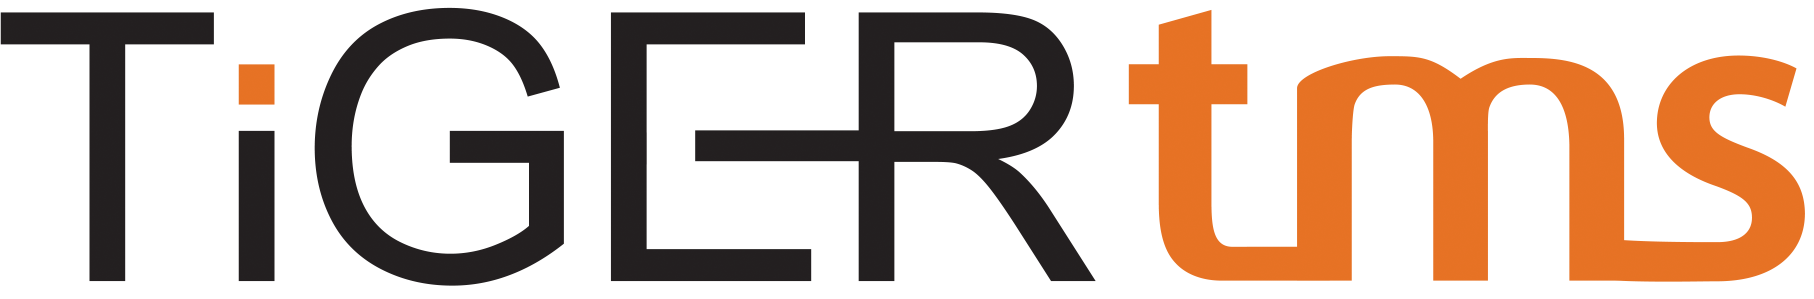 tigertms-logo-transparent